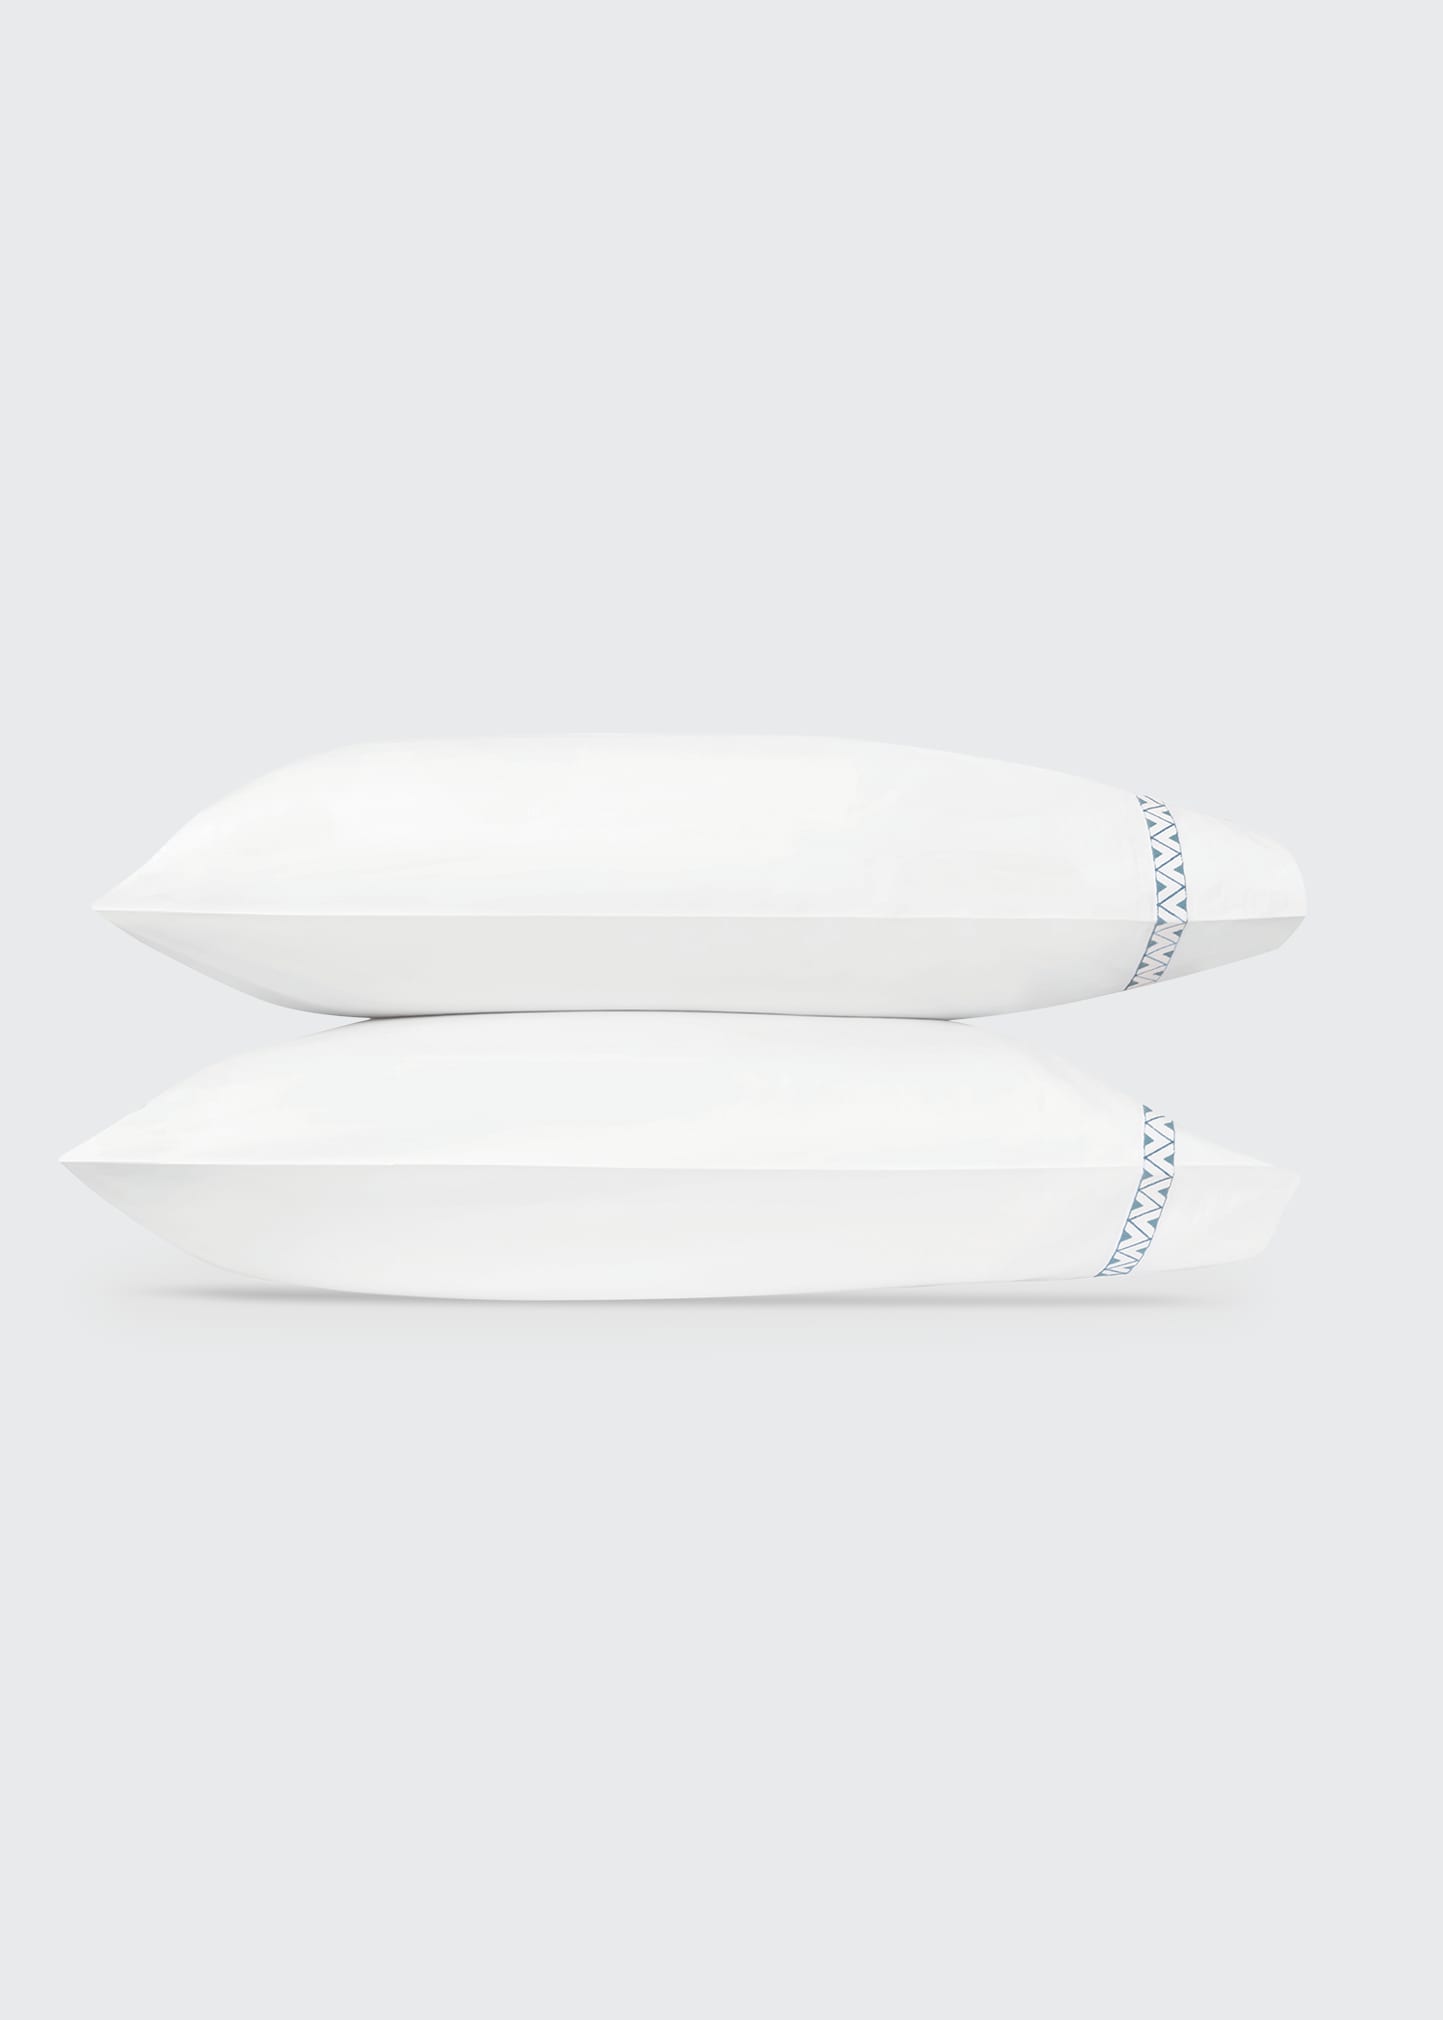 Prado Standard Pillowcases - Pair